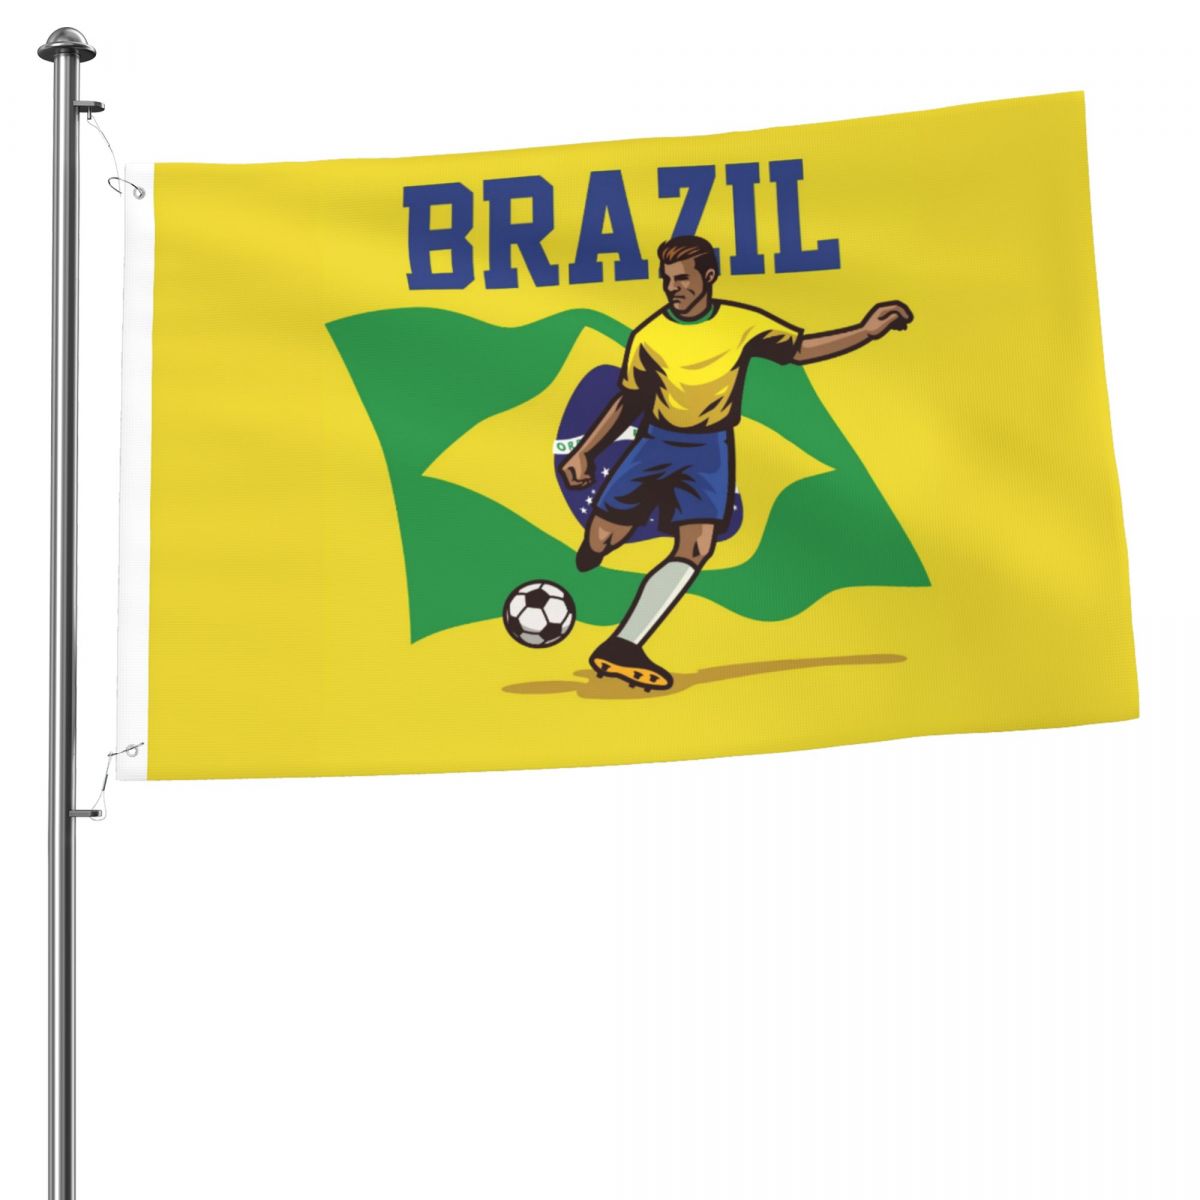 Brazil Soccer Player 2x3 FT UV Resistant Flag